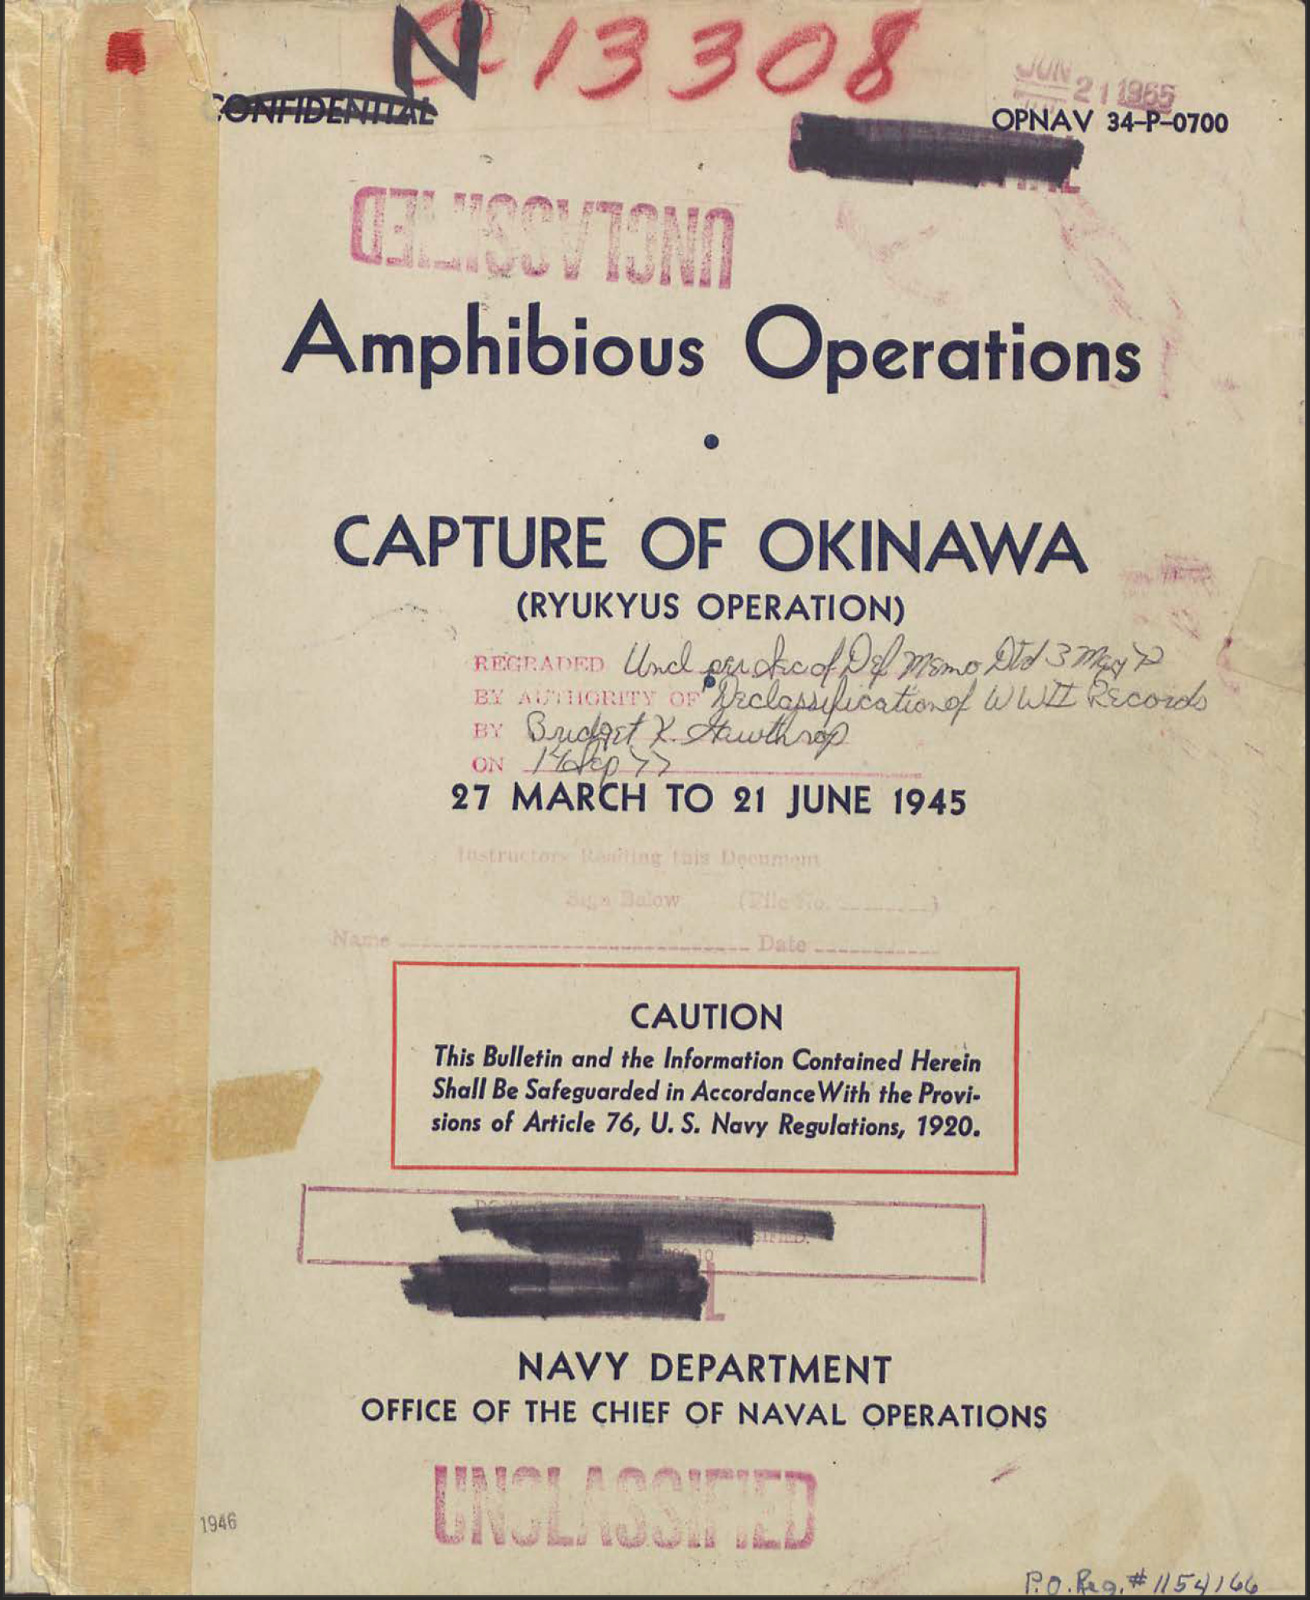 308 Page 1945 OPNAV Amphibious Operations Capture of Okinawa Ryukus on Data CD